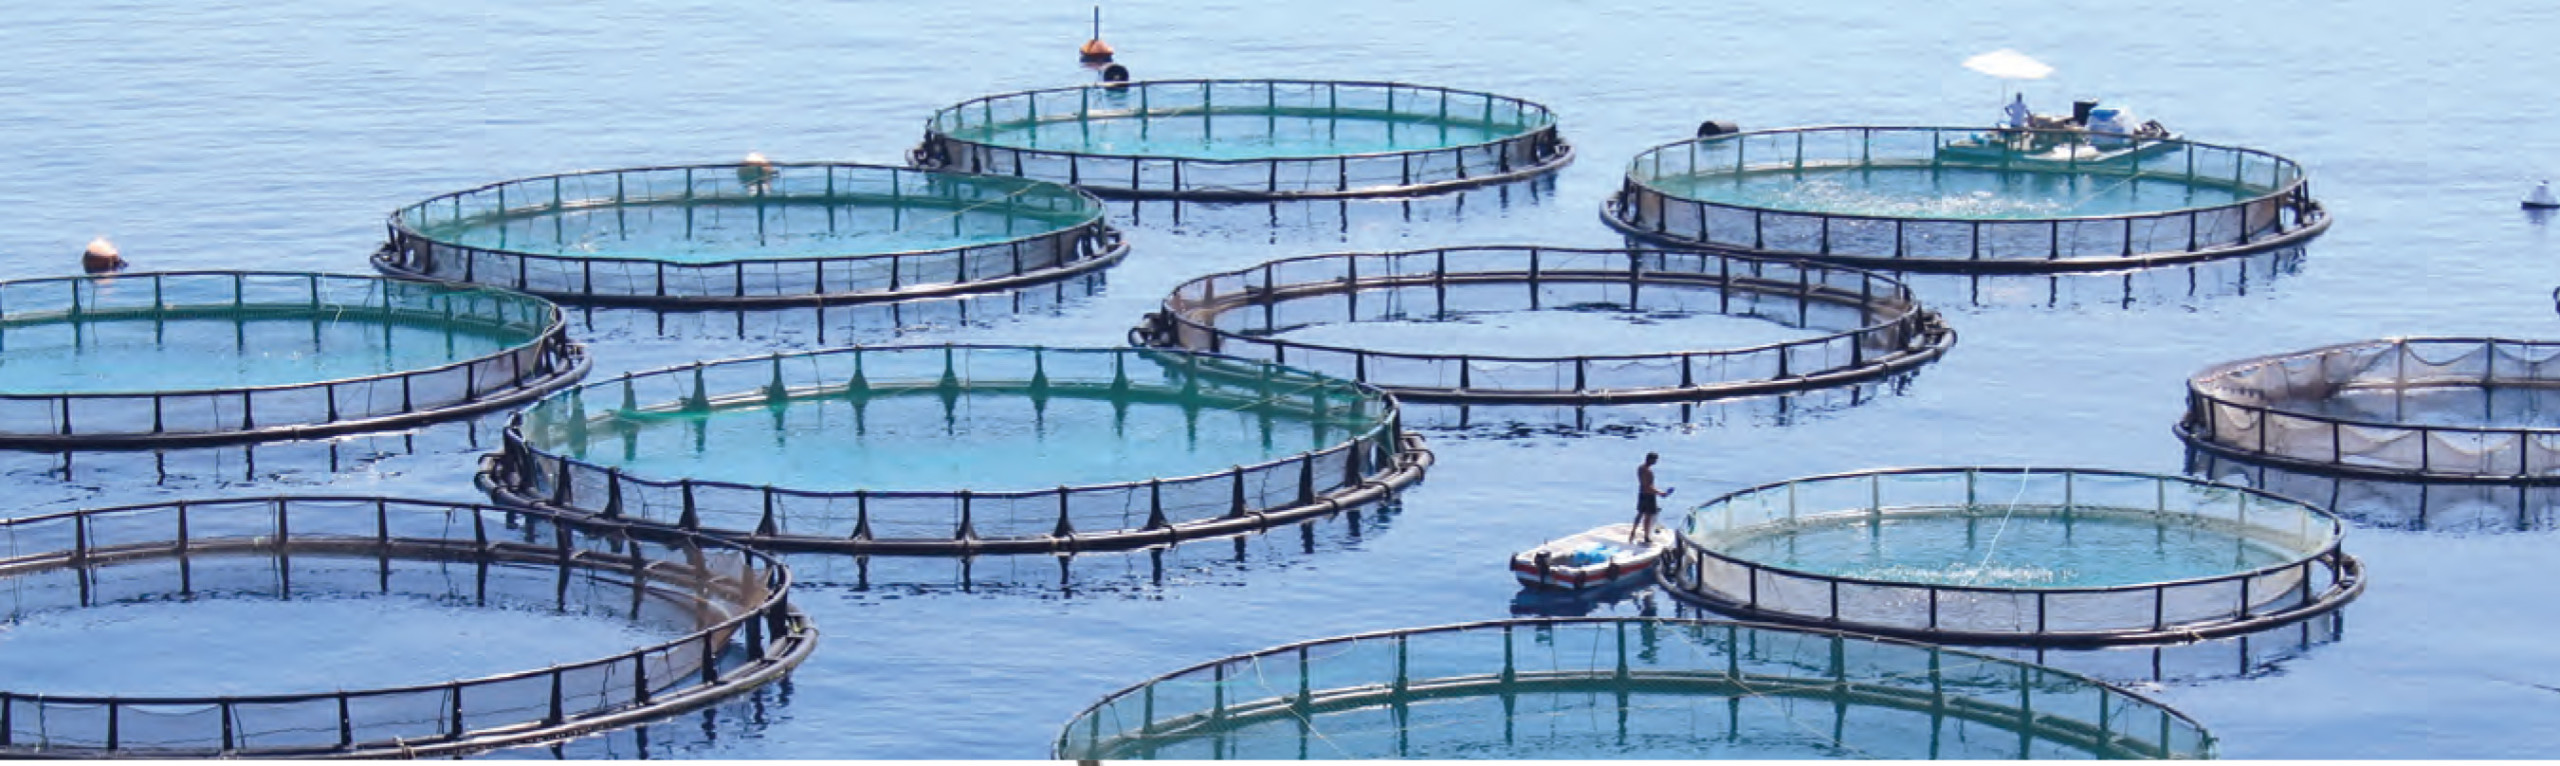 understanding aquaculture